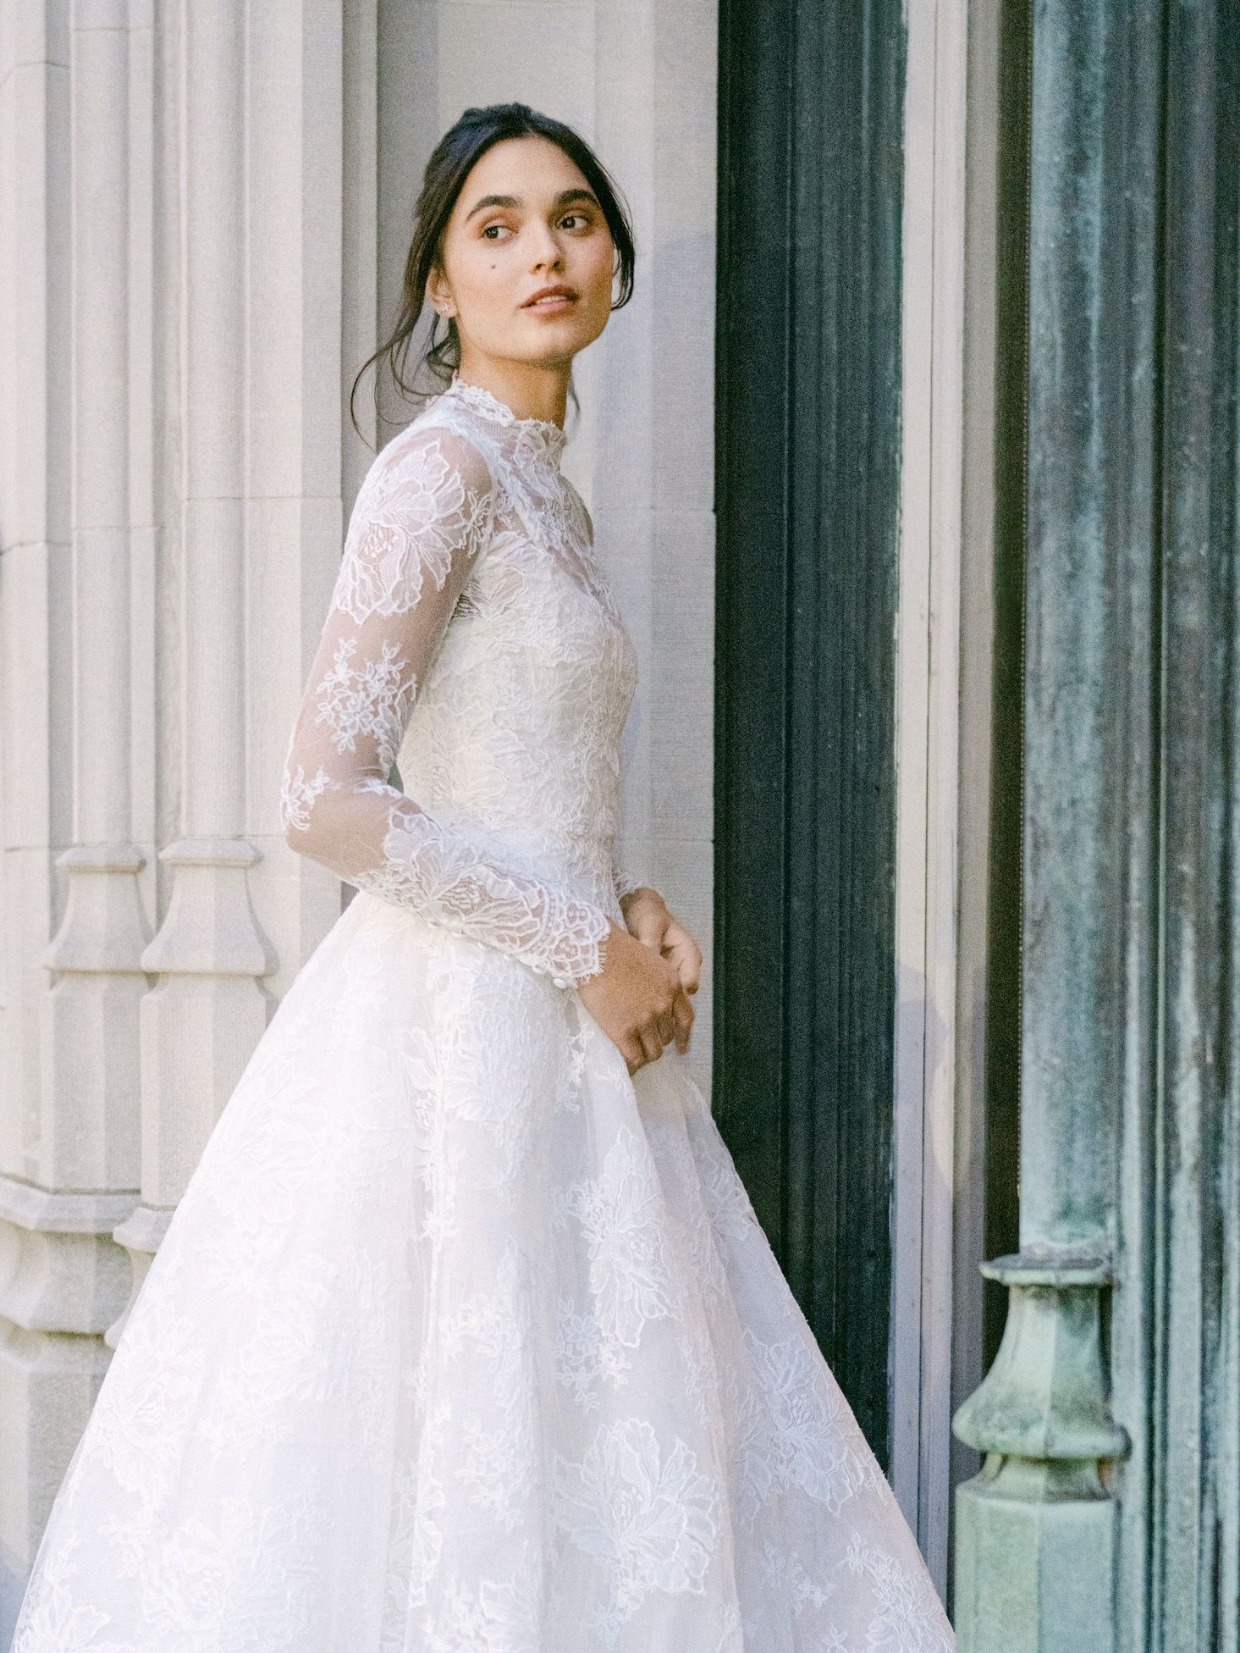 Naomi Biden wedding dress lookalike